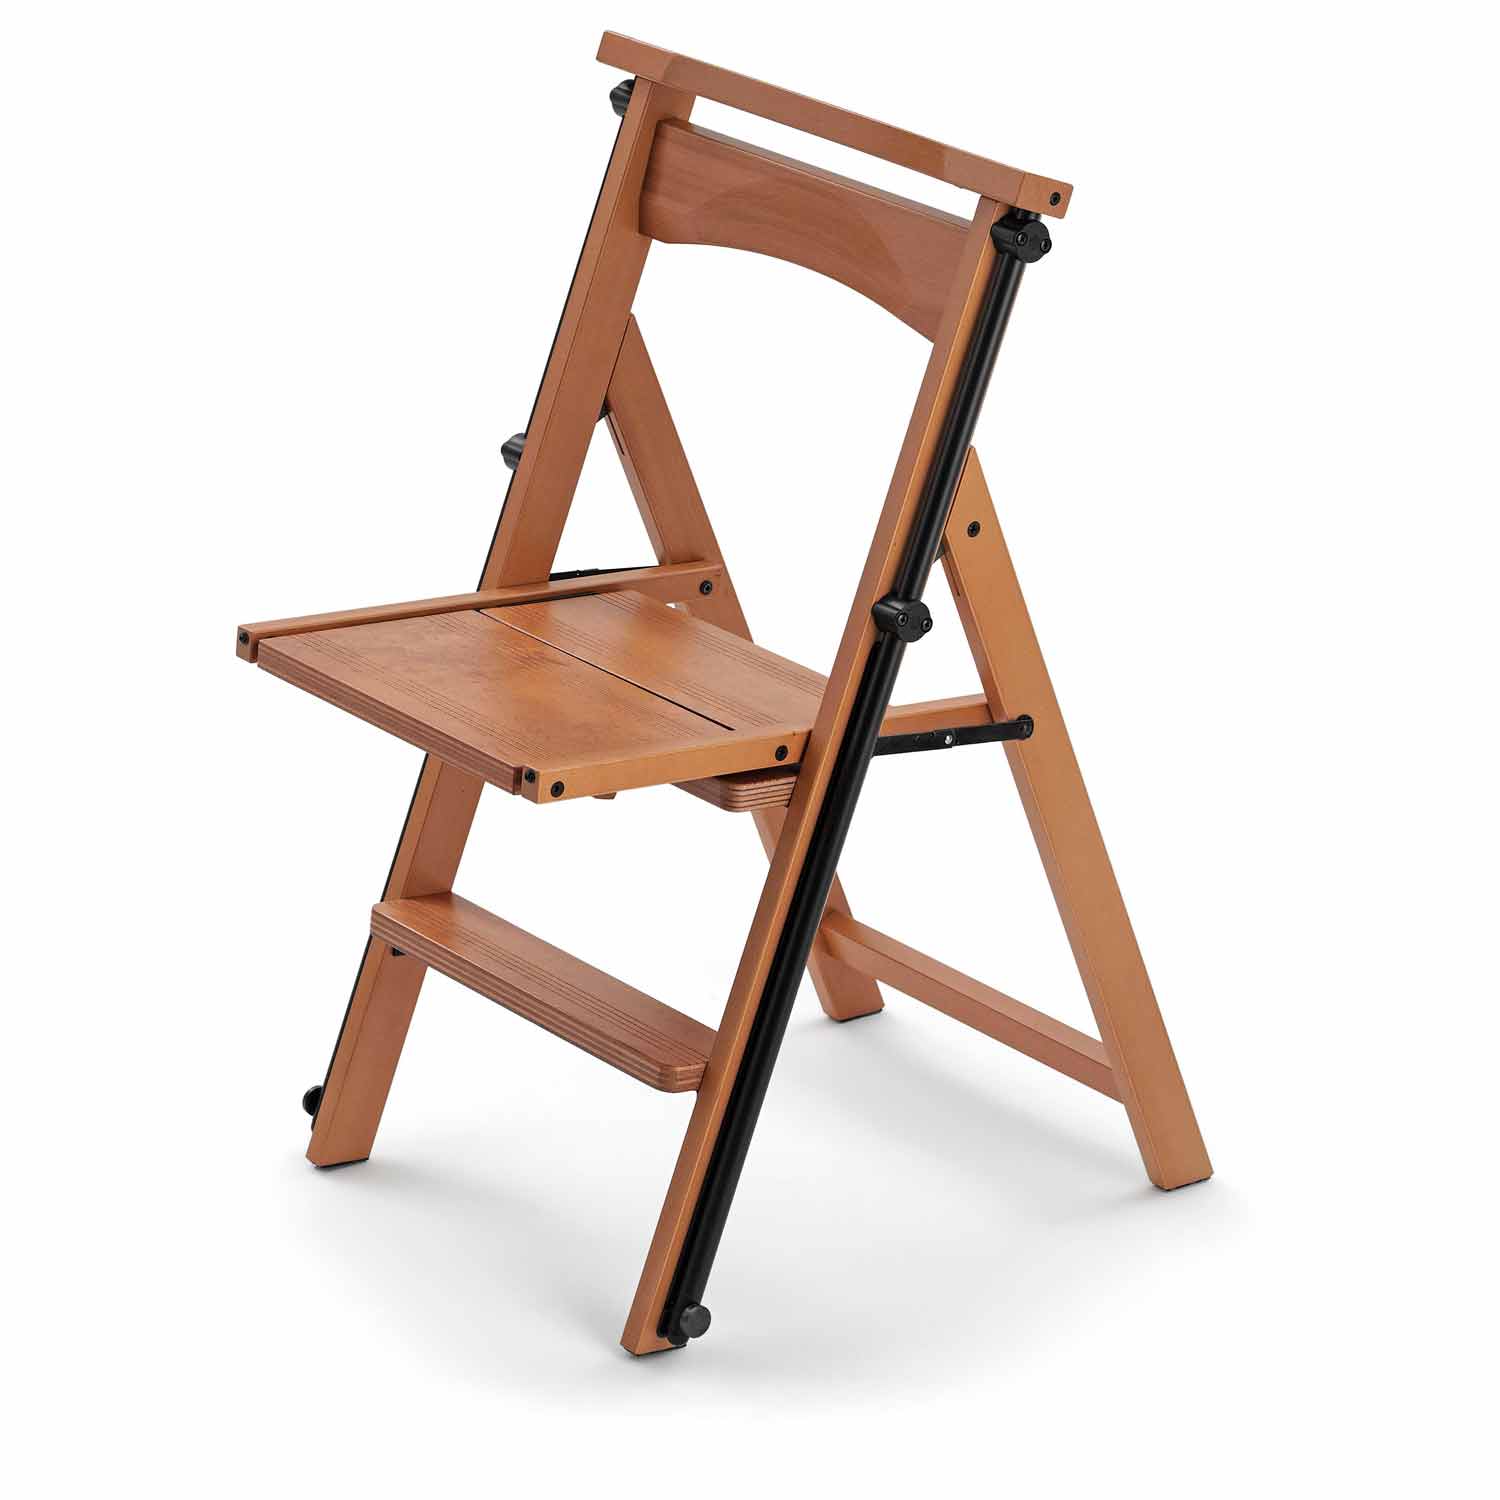 ELETTA - Leiter, Trittleiter, Trittleiter 4 stufen, umwandelbarer Stuhl, mit Sicherheitssystem, kirschfarben, 5